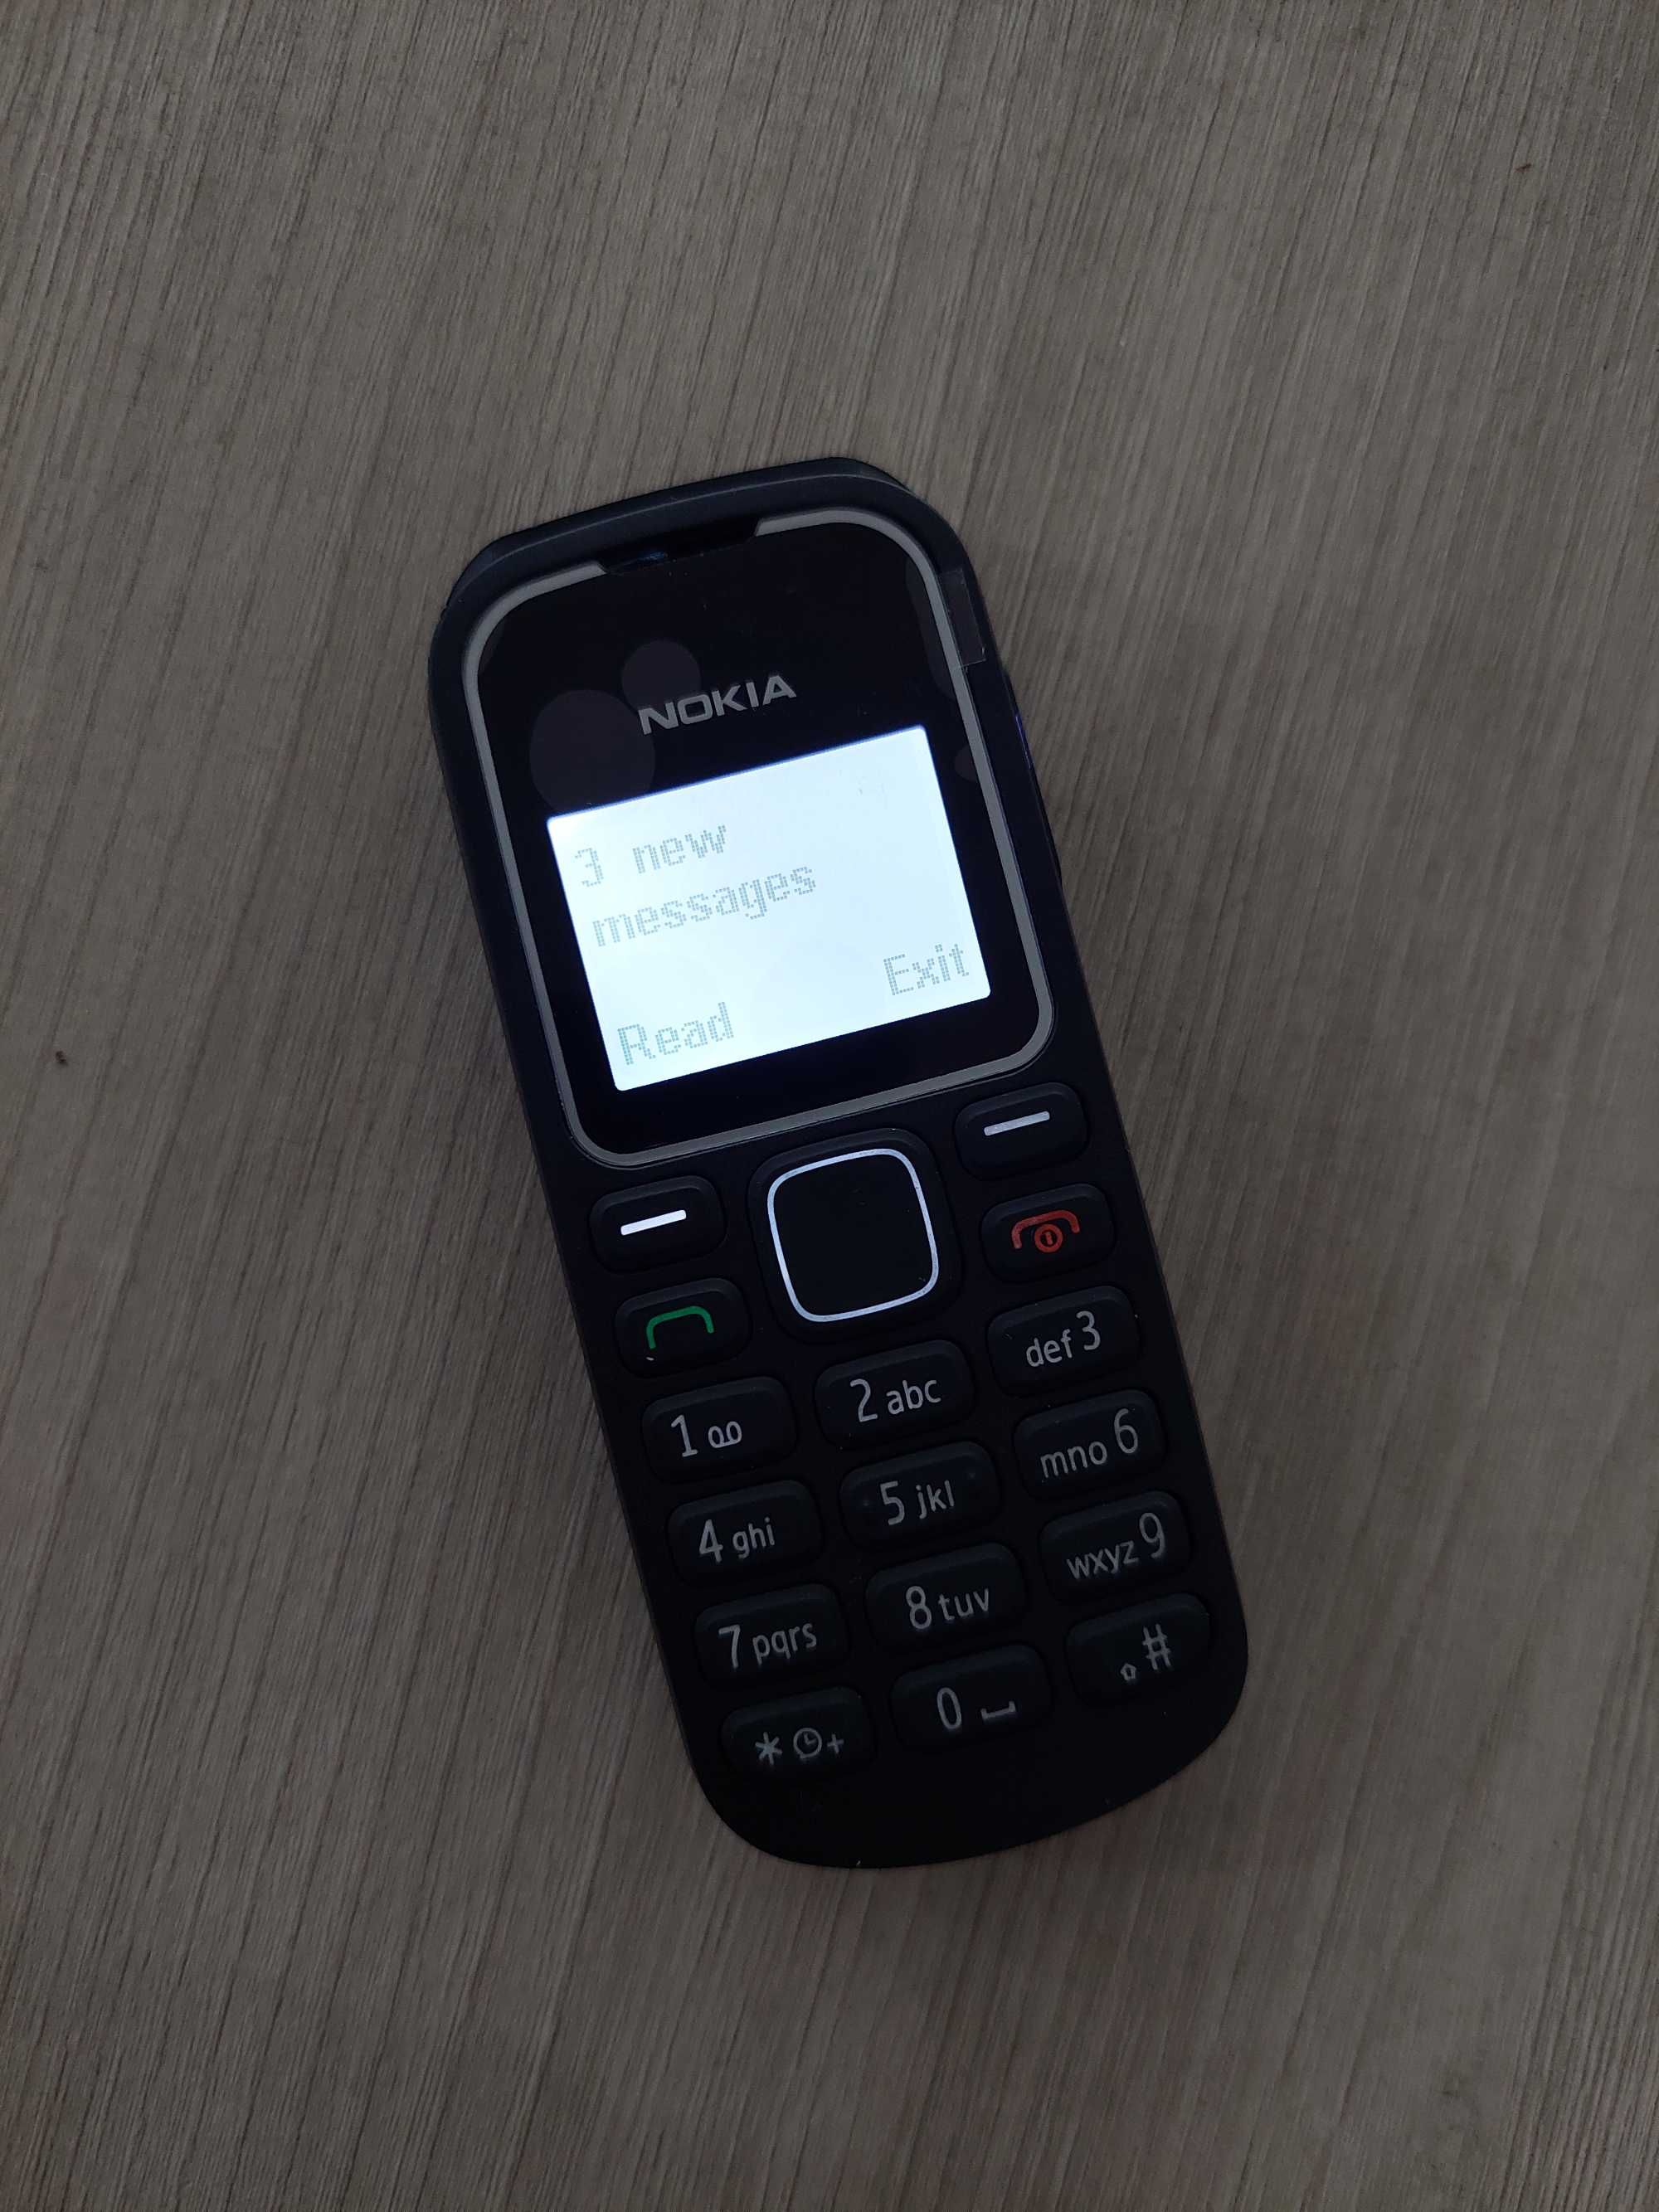 Раритетный кнопочный телефон нокия кирпич Nokia